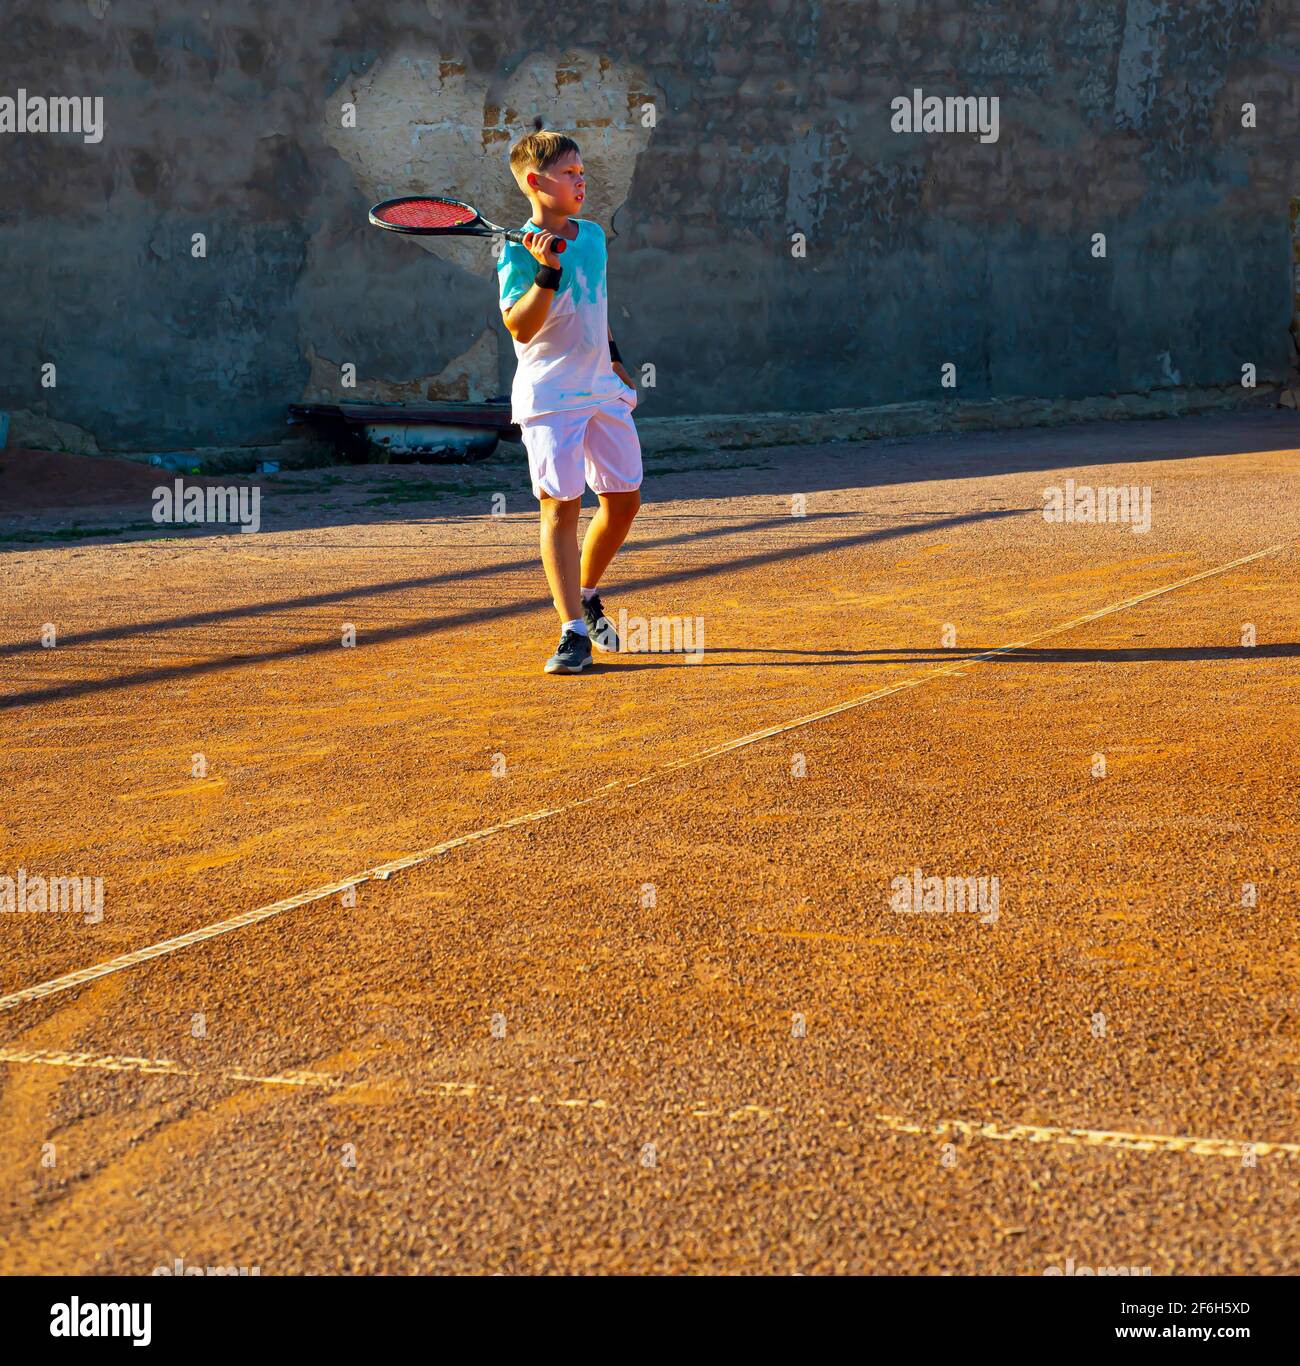 Ragazzo teenager giocatore di tennis su un campo di terra battuta. C'è un cuore sulla parete. Allenamento professionale di tennis. Amore per lo sport. Foto Stock